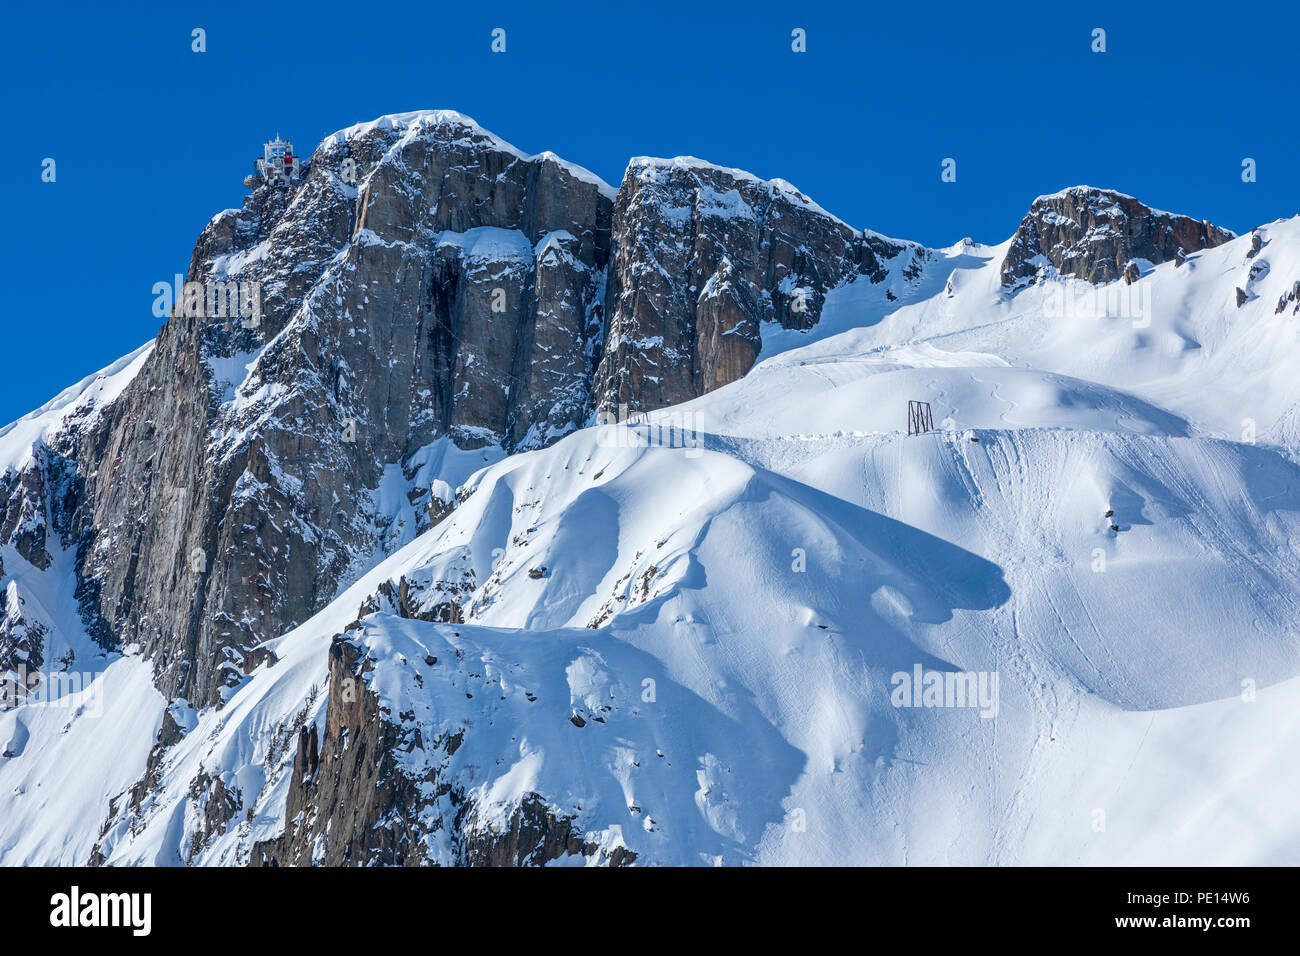 Brevent sopra Chamonix nelle Alpi francesi. La funivia è in partenza per Brevent stazione della funivia. Foto Stock